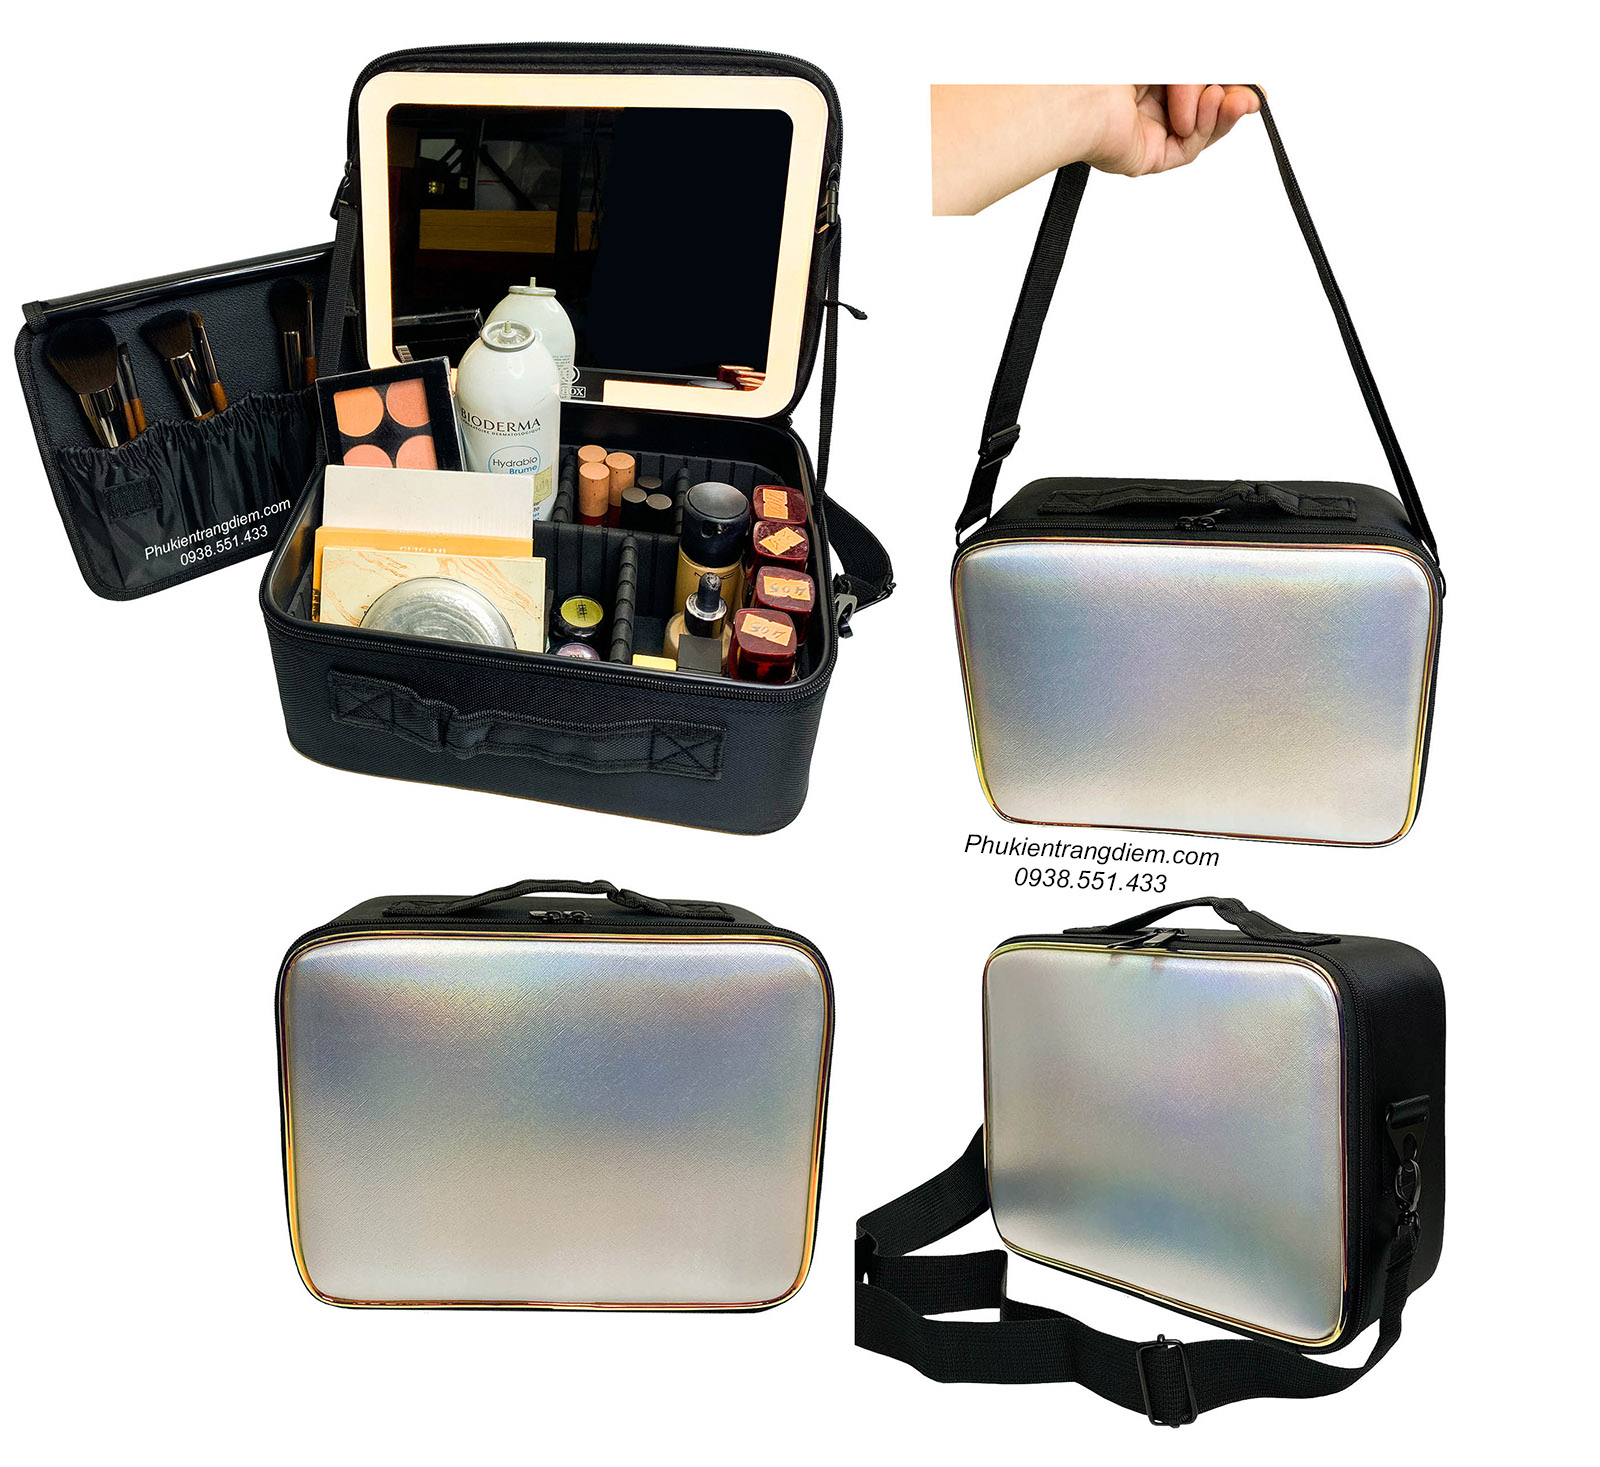 Cốp - túi đựng đồ make up cá nhân vỏ da kèm gương soi có đèn LED sang trọng giá rẻ